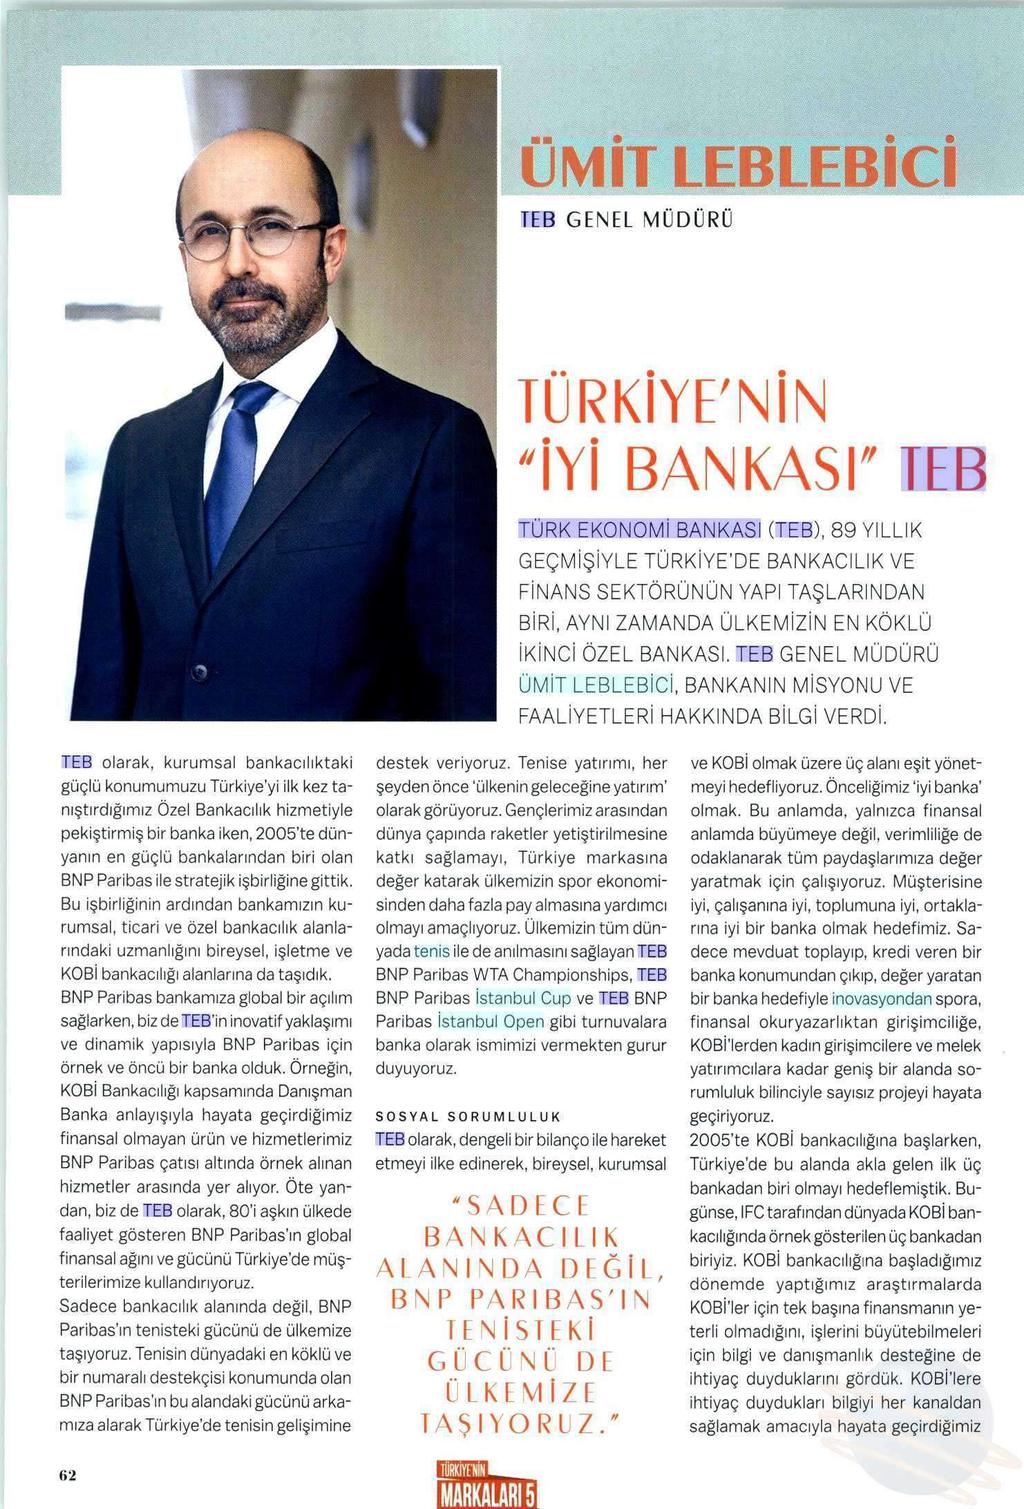 TÜRKIYE NIN IYI BANKASI TEB Yayın Adı : Capital Türkiye'nin Markaları